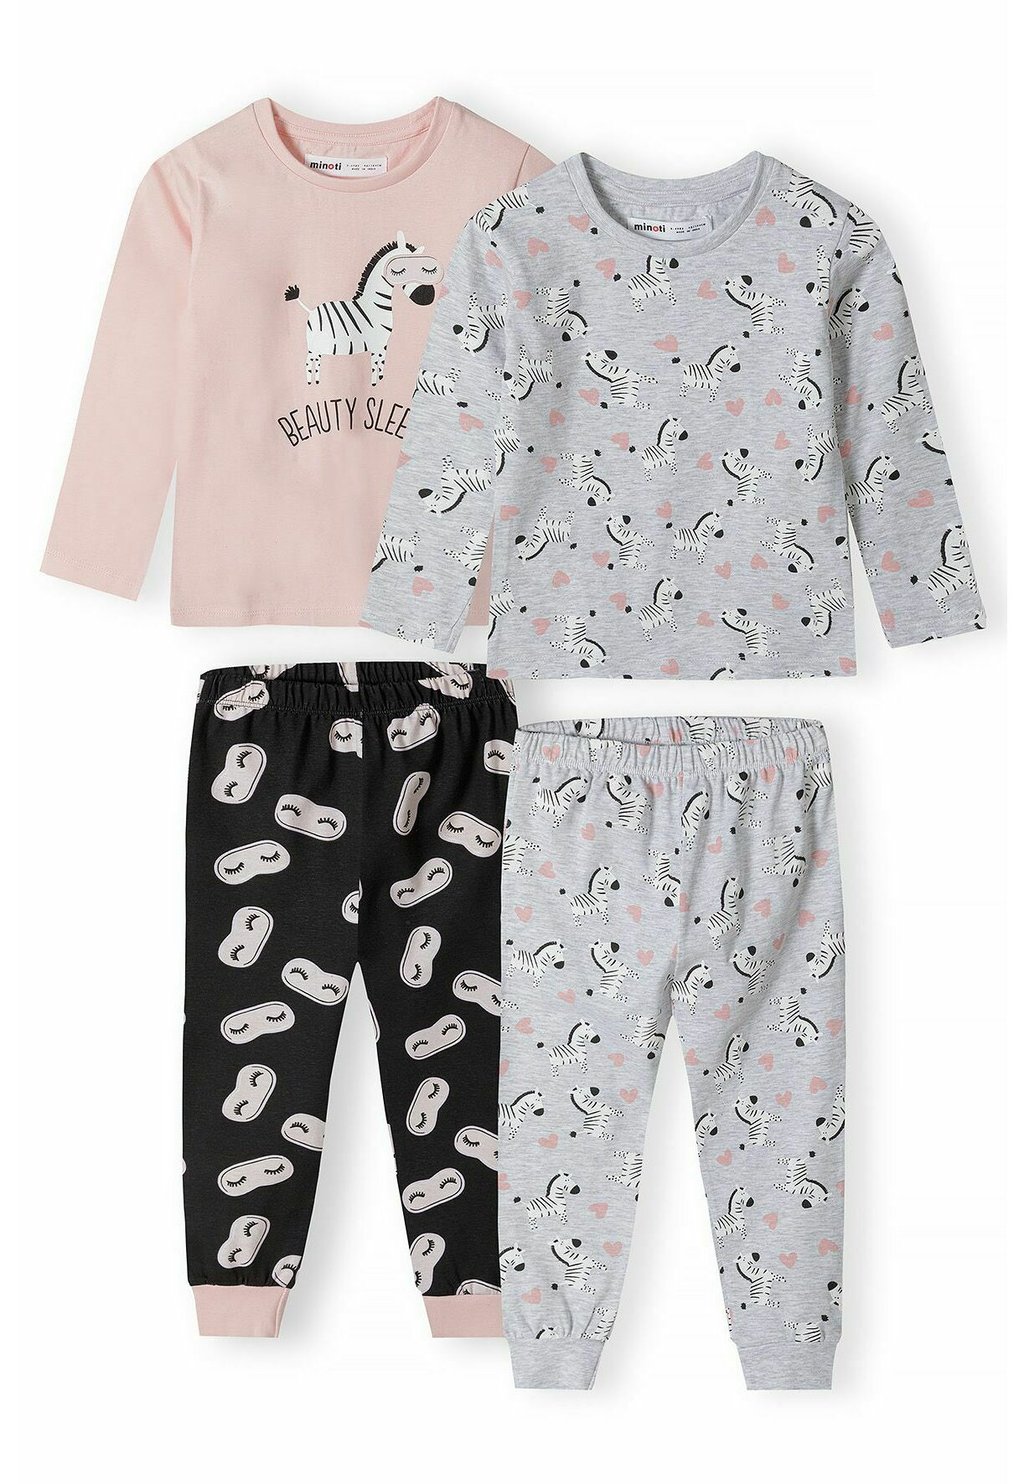 Пижамы 2 Pack Set MINOTI, цвет grey white pink black пижамы slogan set 3 pack next цвет pink grey white